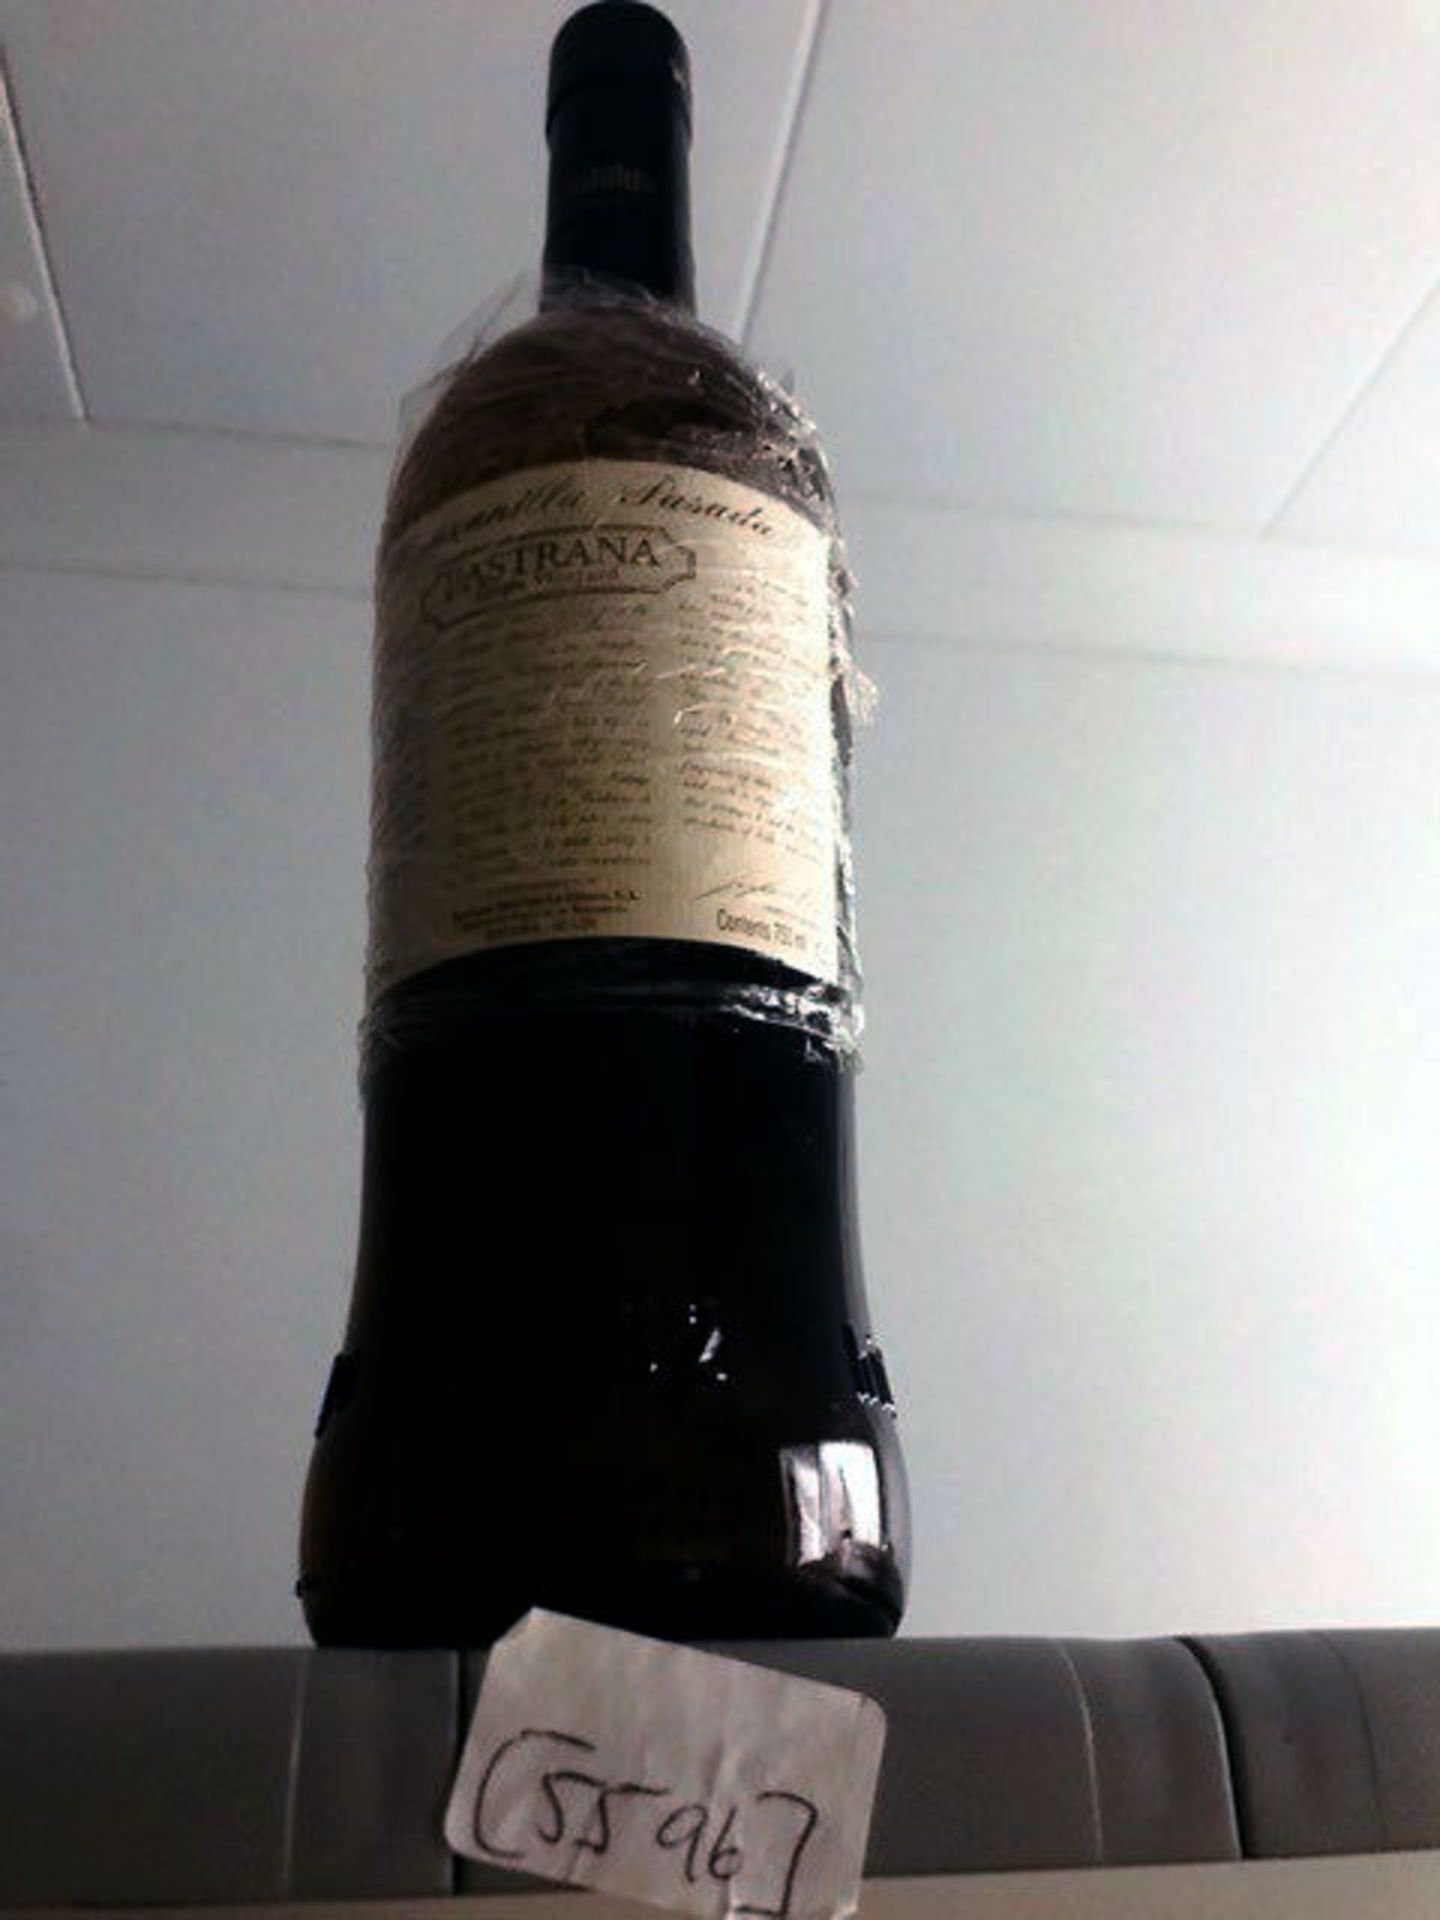 Fortified Wine - Manzanilla Pastana Pasada 1 X Bottle